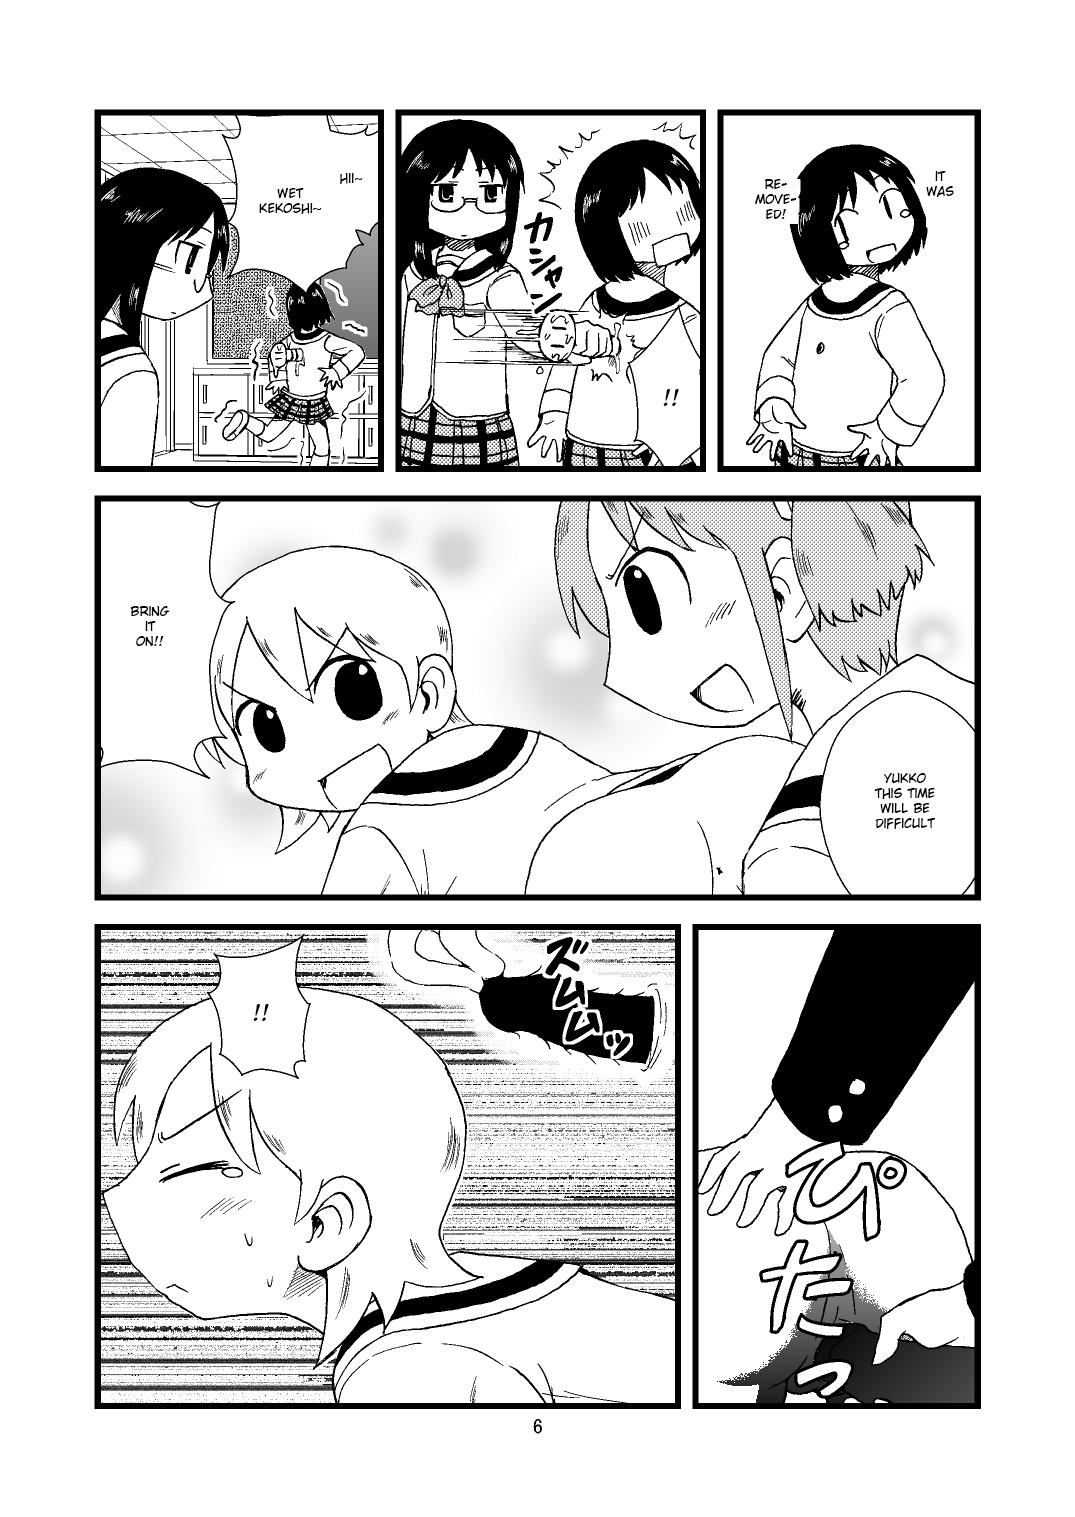 Buceta ゆっこにツッコミまんが - Nichijou Defloration - Page 6